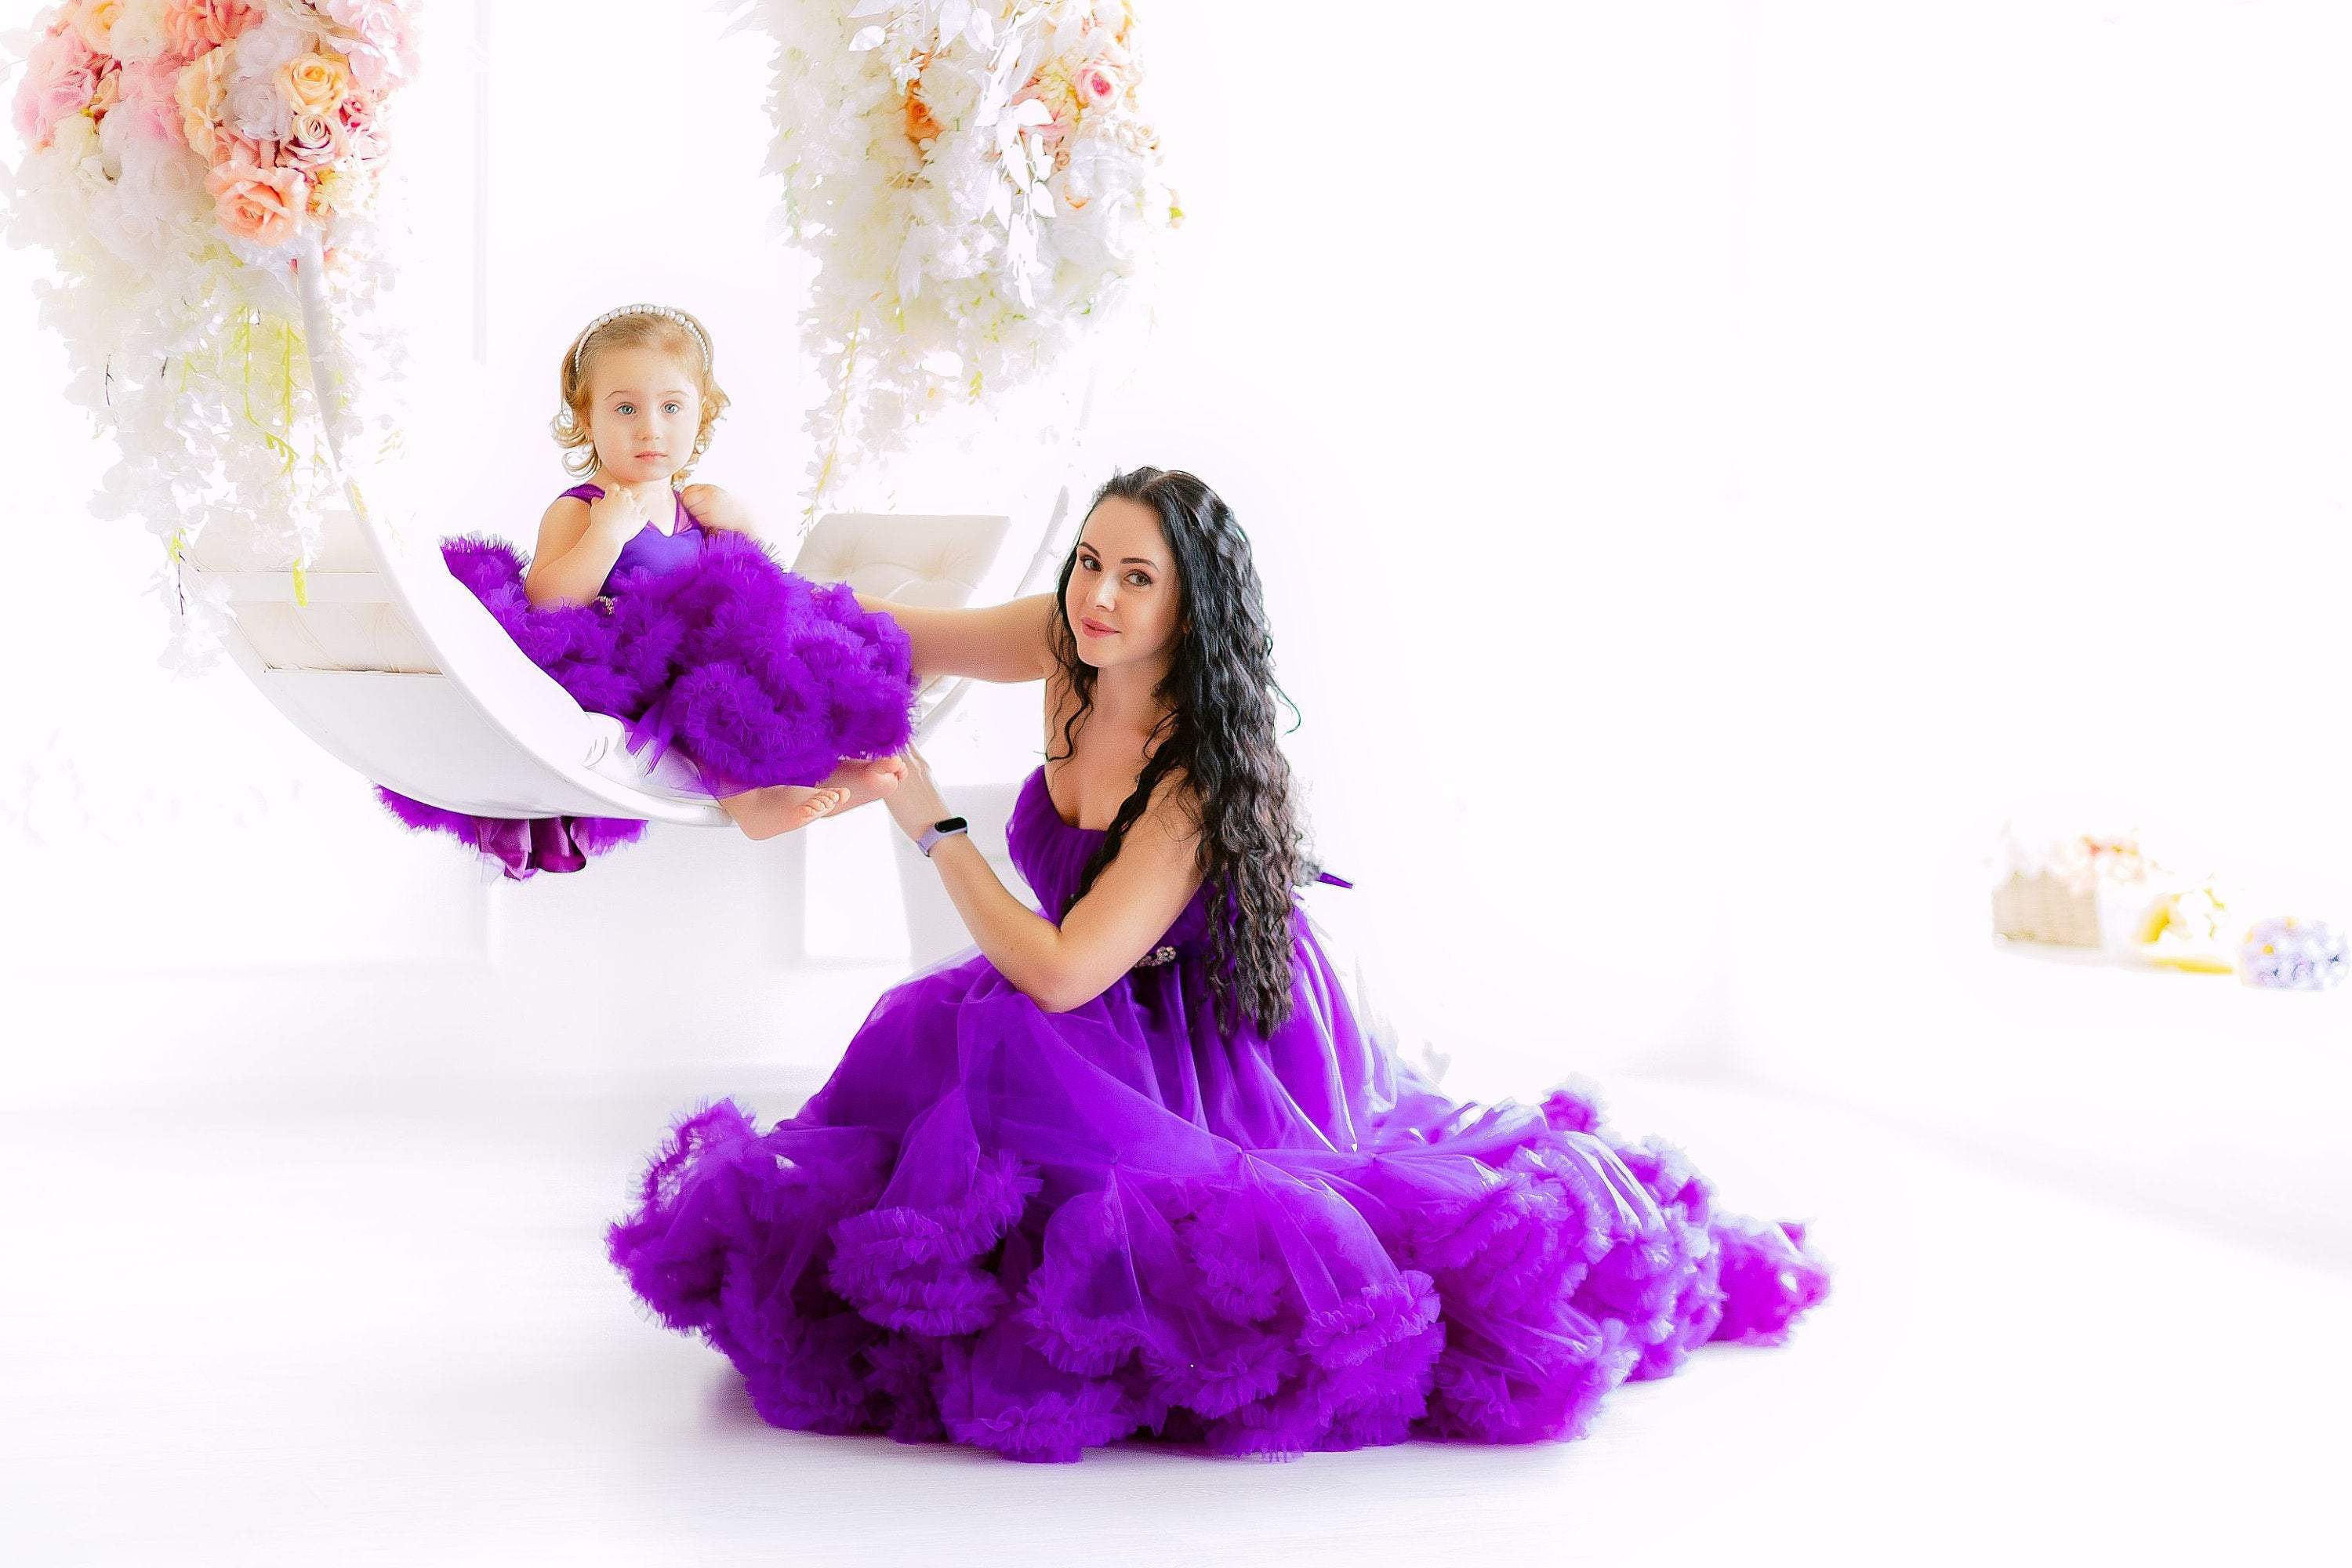 Purple Ruffle Matching Dress, Photoshoot Dress, Matching Ball Gowns, B